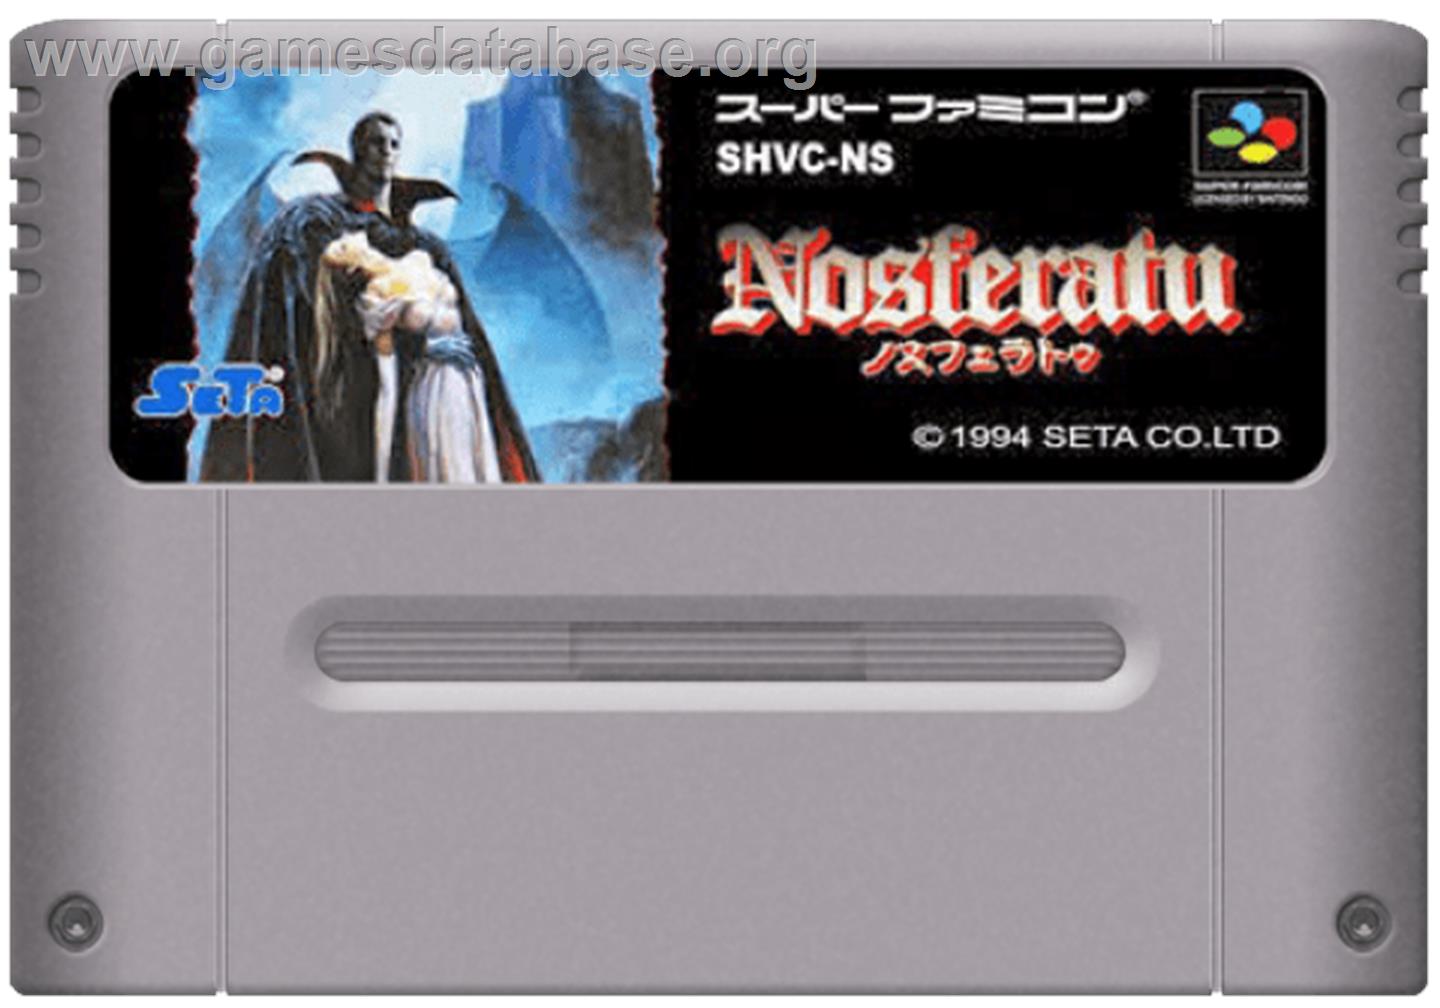 Nosferatu - Nintendo SNES - Artwork - Cartridge